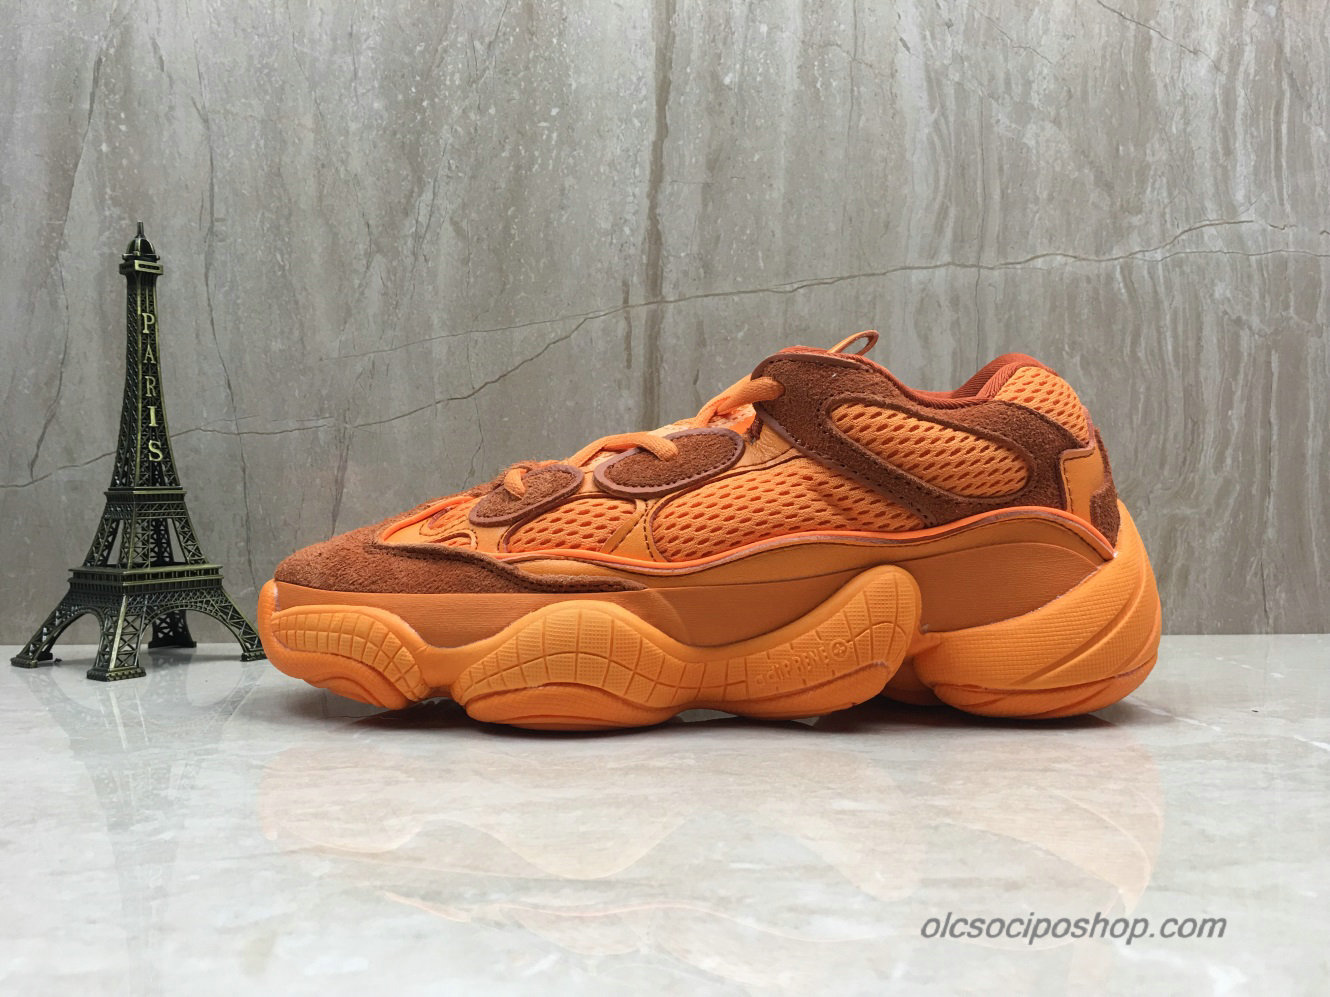 Adidas Yeezy Desert Rat 500 Blush Narancs Cipők (F36648) - Kattintásra bezárul